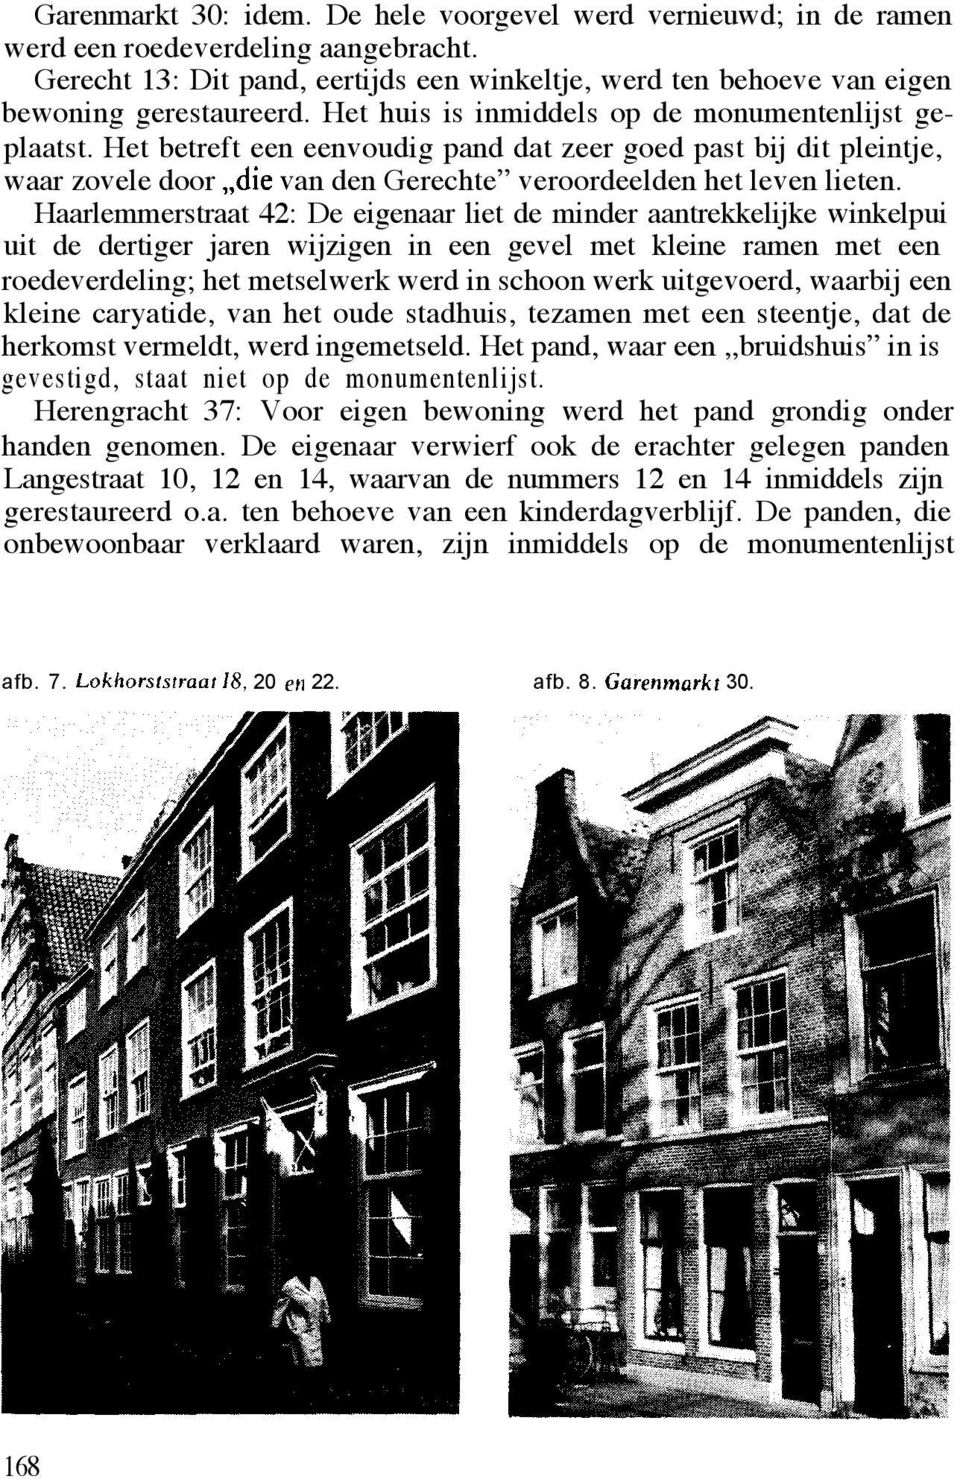 Haarlemmerstraat 42: De eigenaar liet de minder aantrekkelijke winkelpui uit de dertiger jaren wijzigen in een gevel met kleine ramen met een roedeverdeling; het metselwerk werd in schoon werk